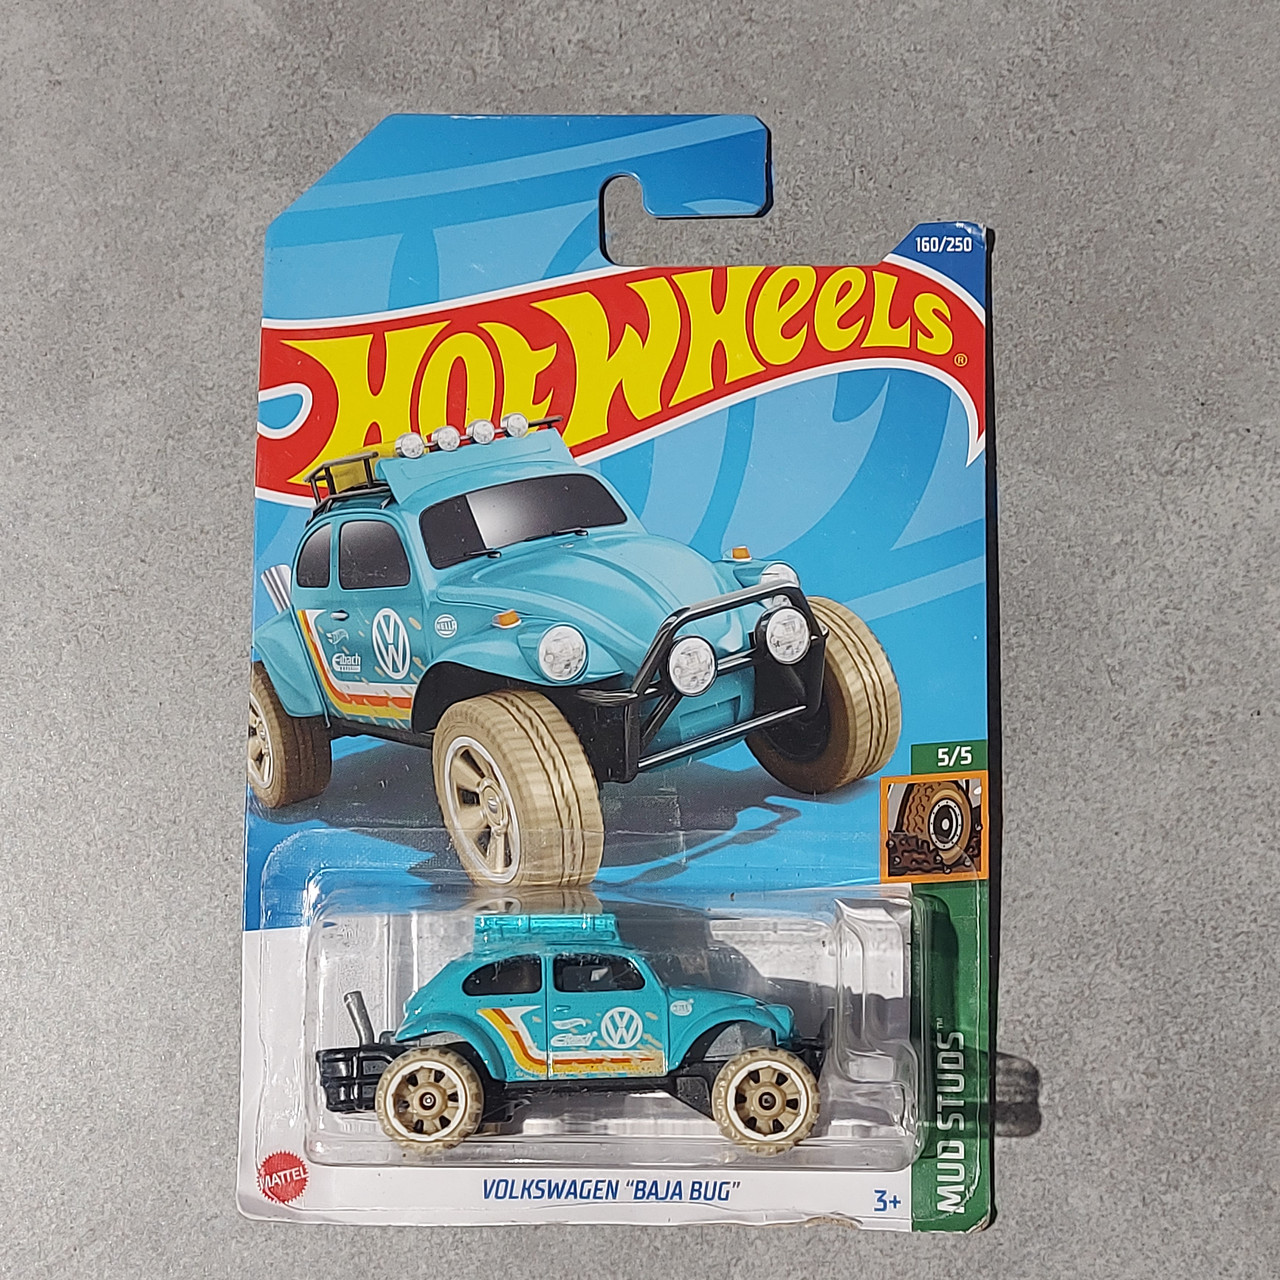 Оригинальная Машинка "Hot wheels" VOLKSWAGEN "BAJA BUG". Mud Studs. Mattel. 160/250. Хотвилс. Машинки. Подарок